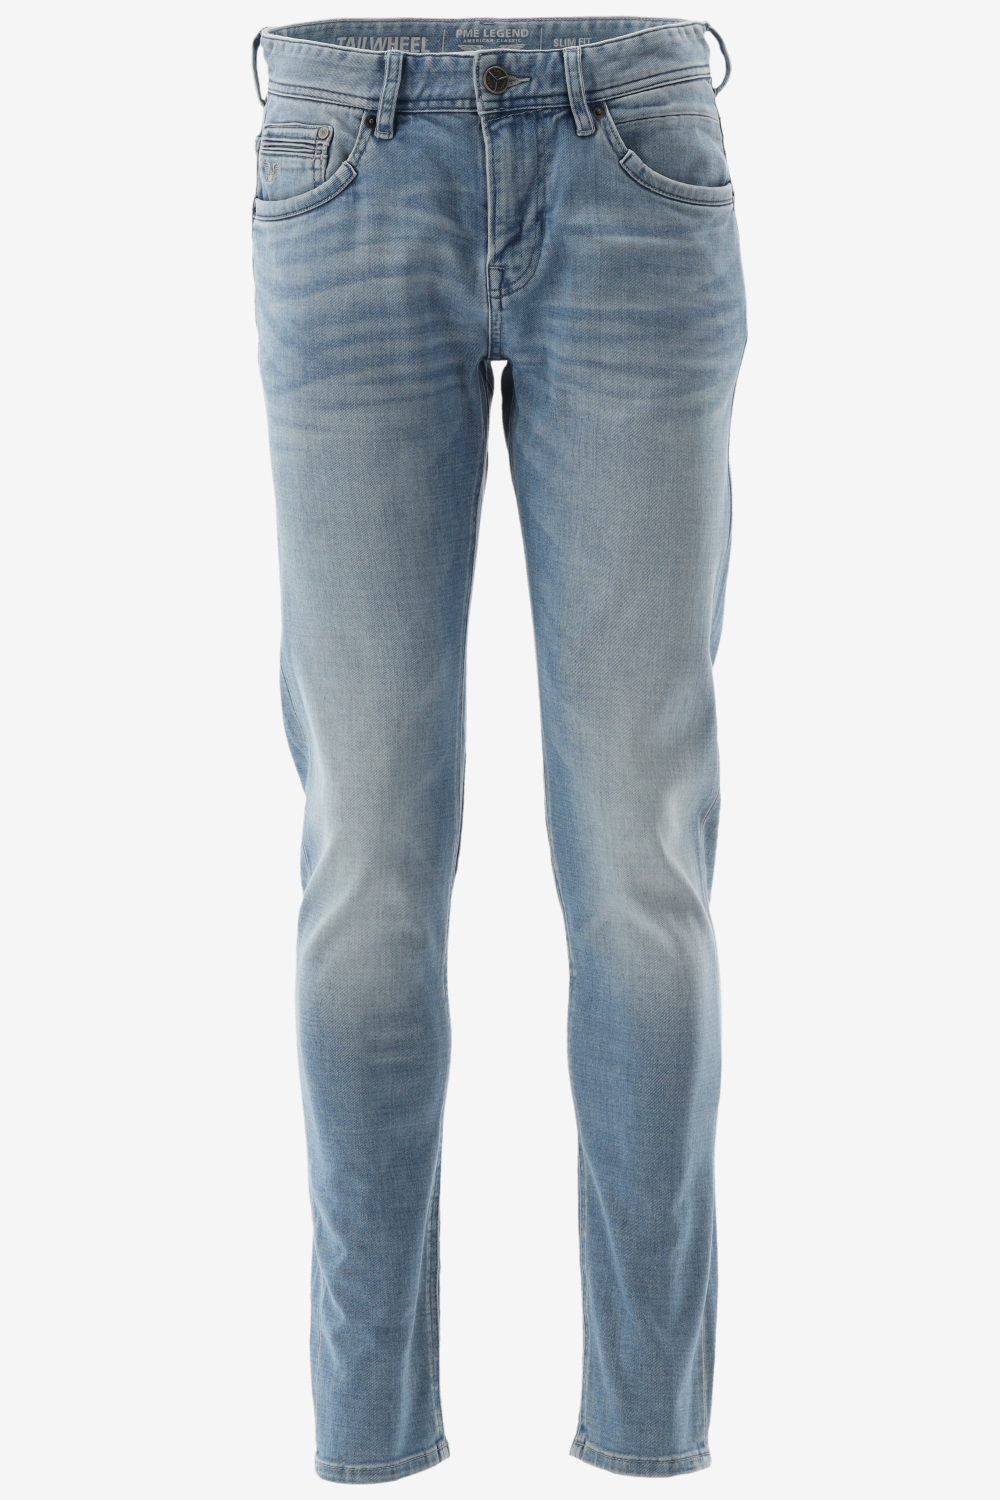 Herenkleding Jeans Pme Legend | GRATIS Fit Fashion Webshop - Slim VERZENDING! TAILWEEL - Bergmans Outlet